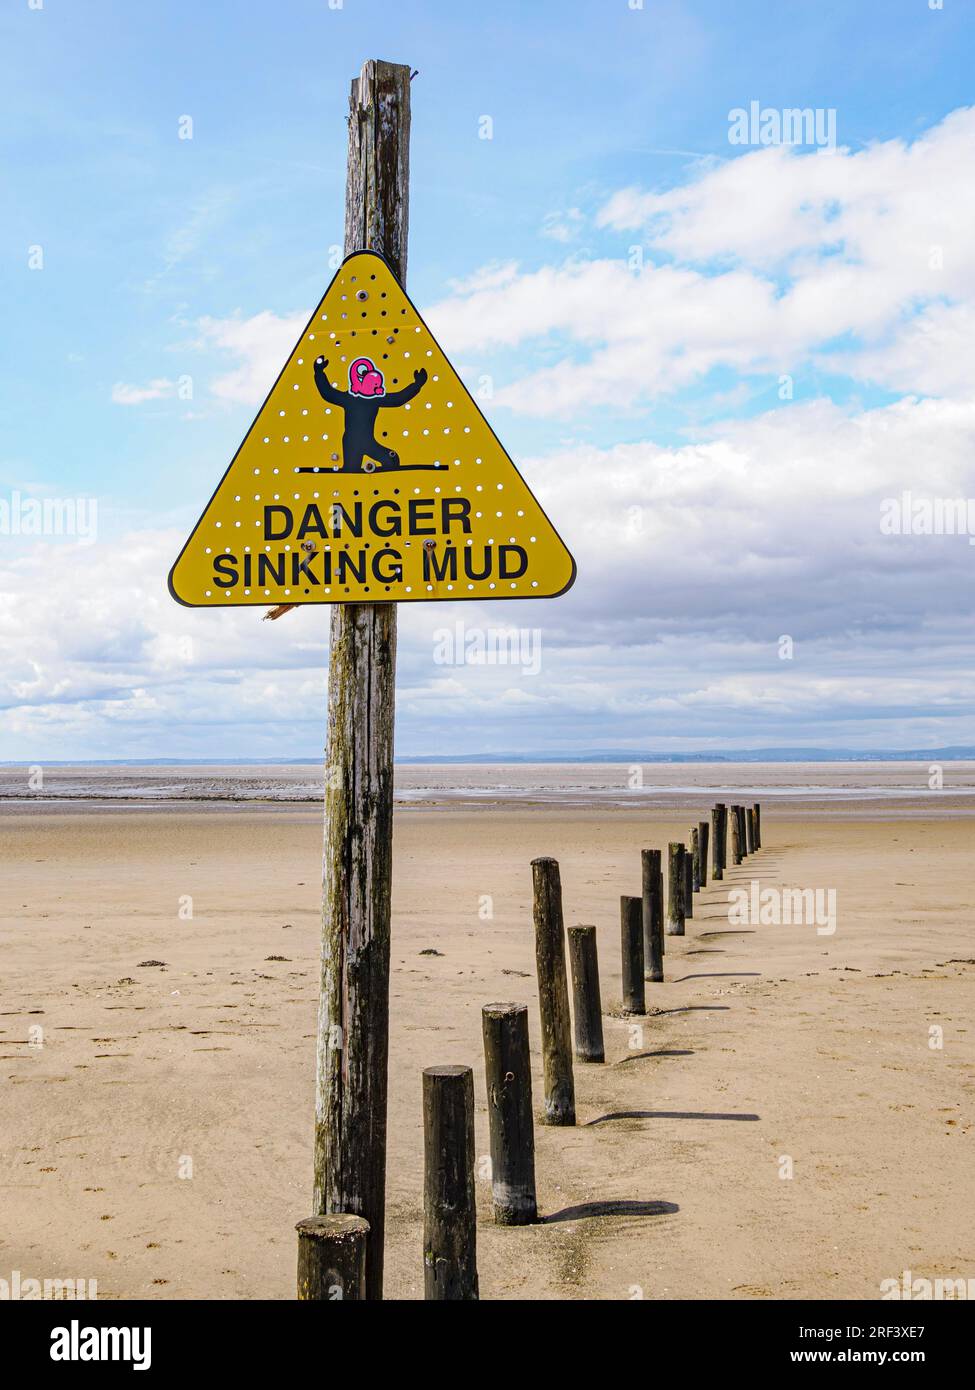 Triangle d'avertissement sur la plage à Weston super Mare dans Somerset donné un visage de dessin animé pour avertir de couler la boue Banque D'Images